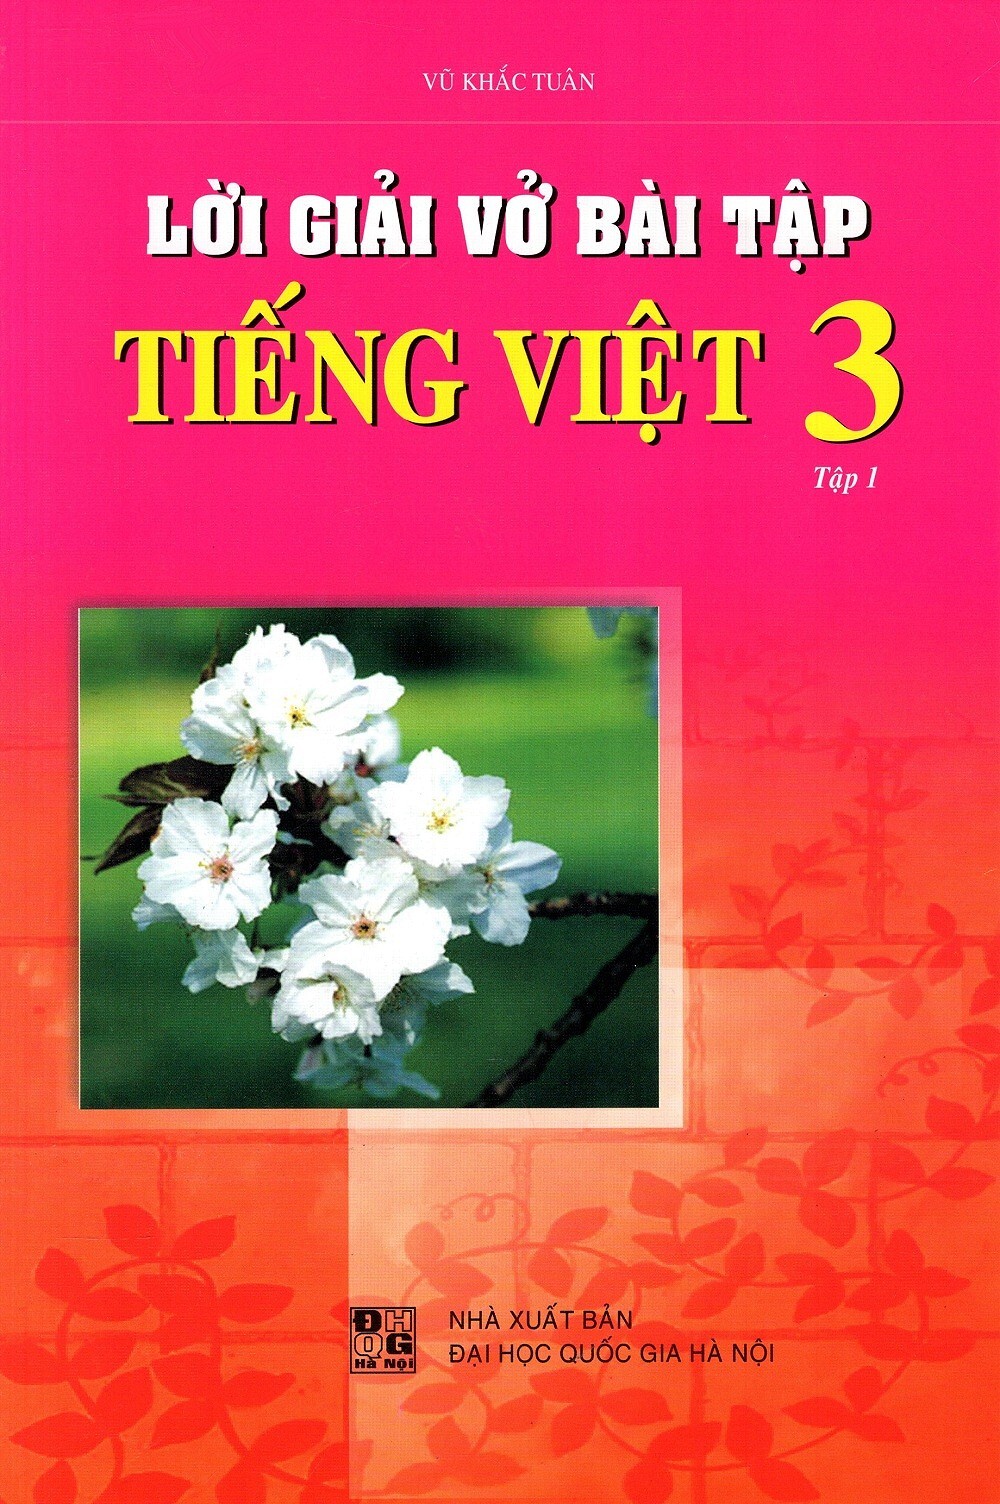 Nơi bán Vở Bài Tập Tiếng Việt Lớp 1 giá rẻ, uy tín, chất lượng nhất